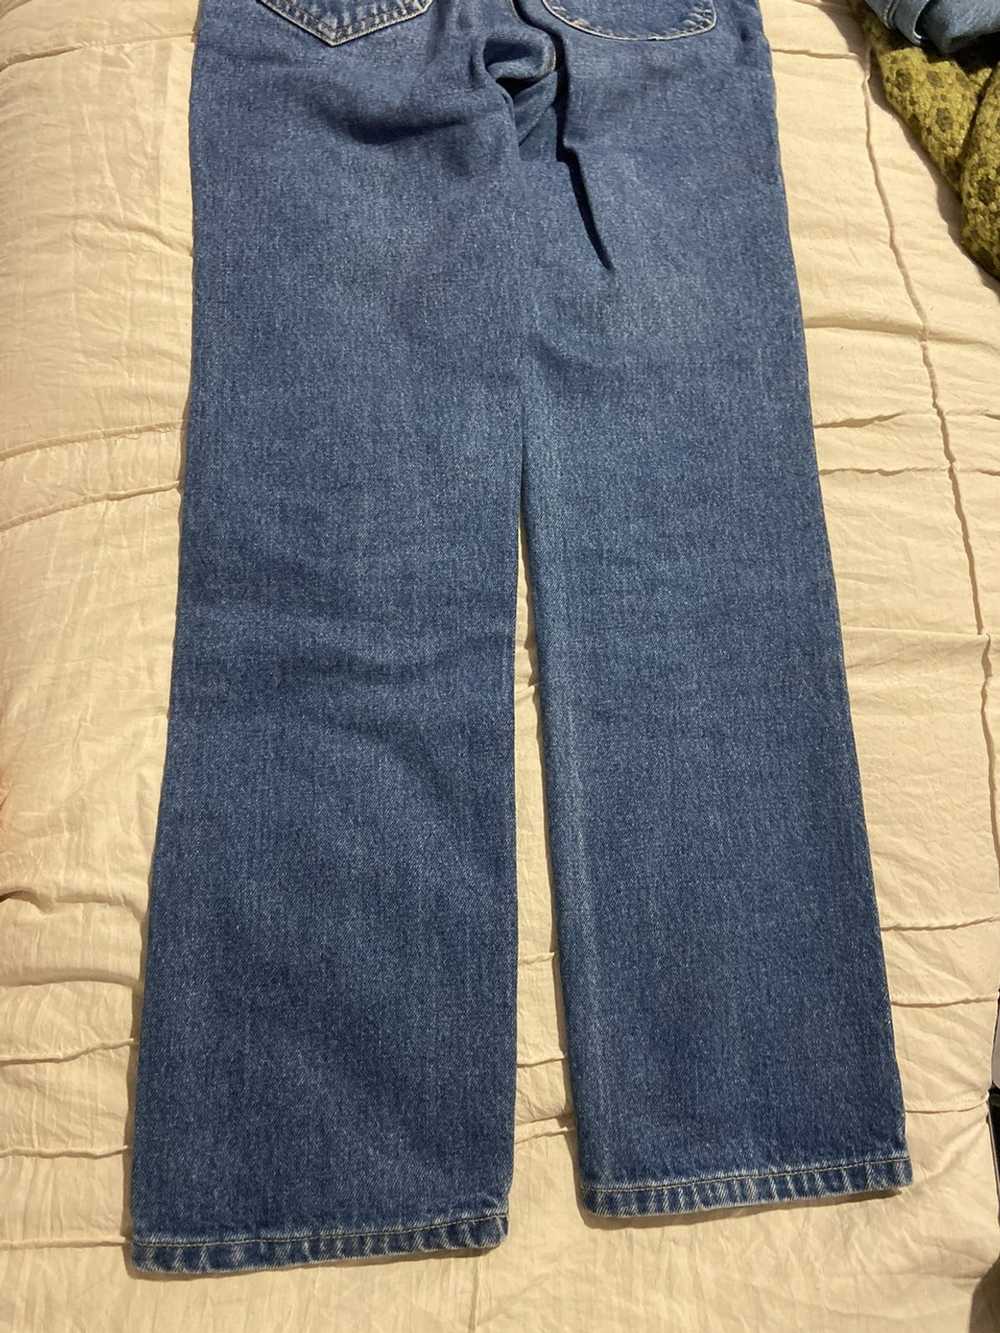 Lee Vintage Lee Jeans Blue Denim - image 6